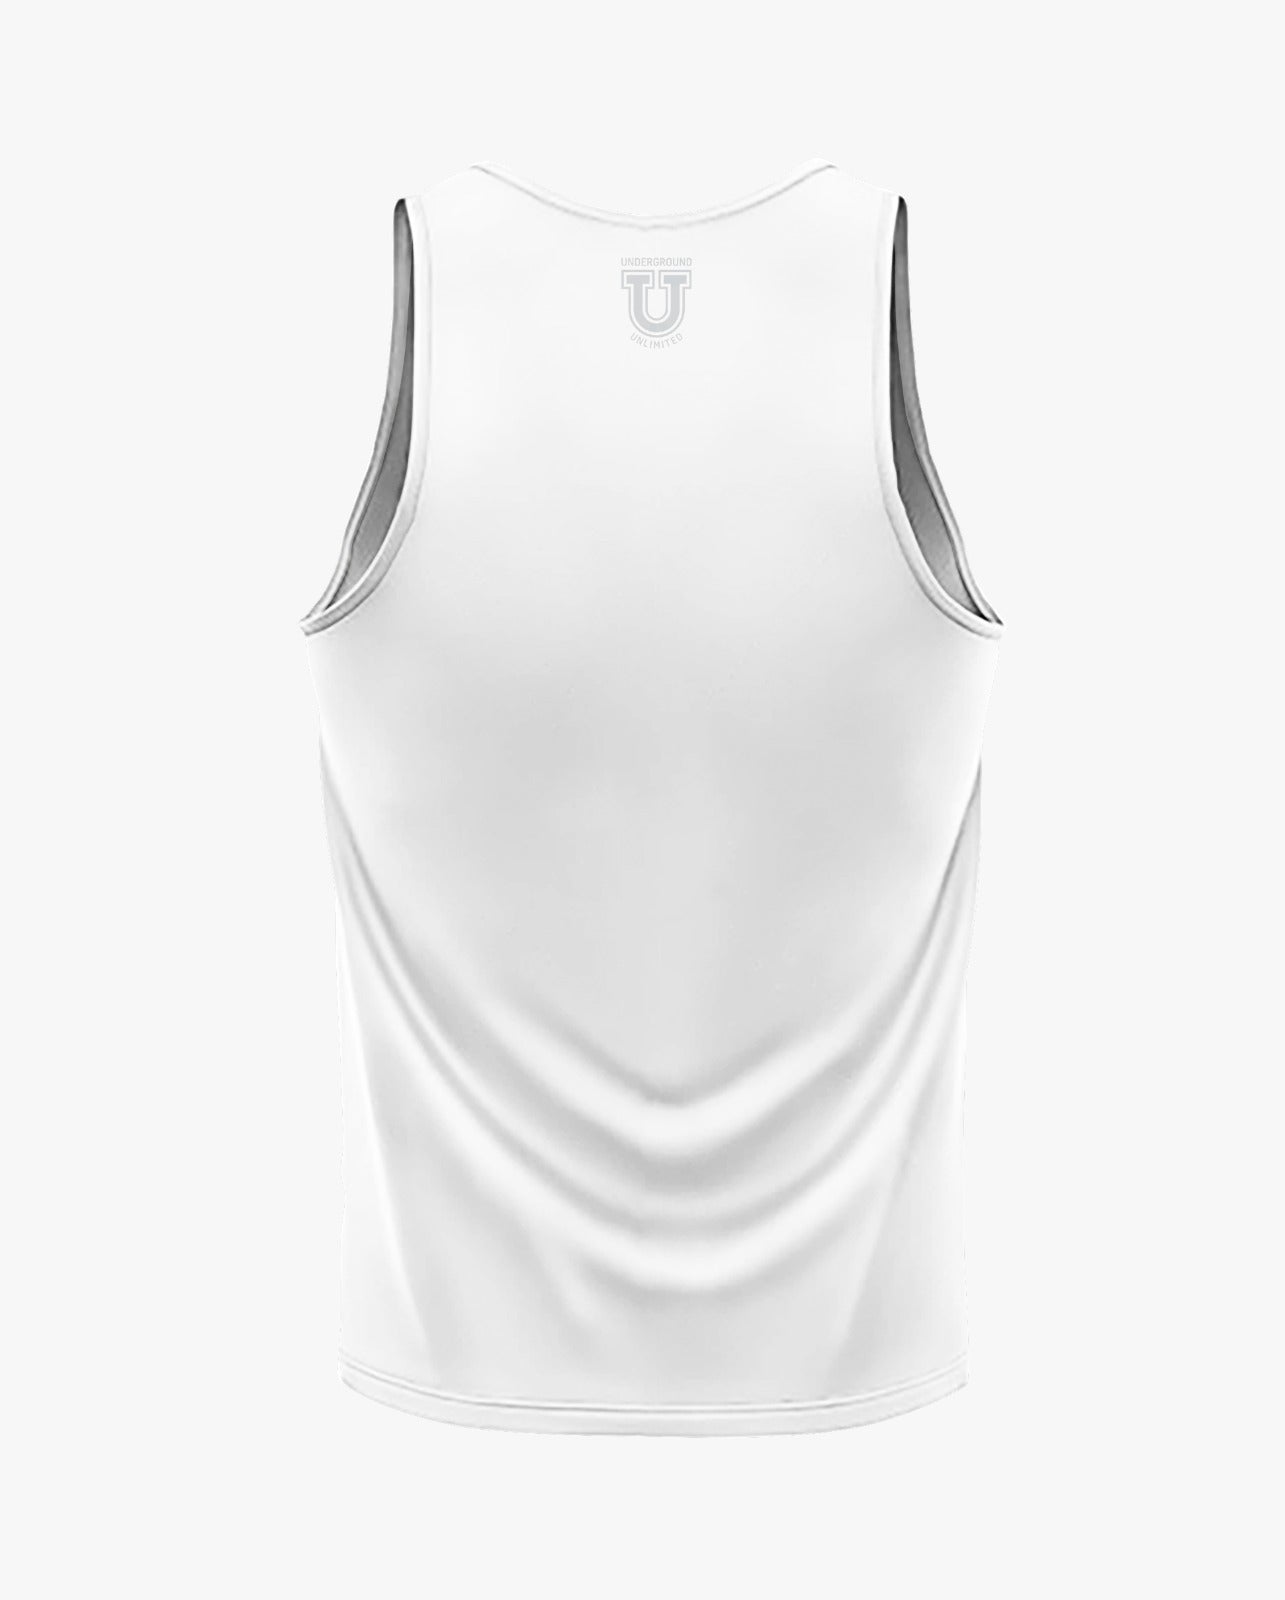 Buccaneers Cheerleading Dri Tech Men's Tank Top ~ Solid White